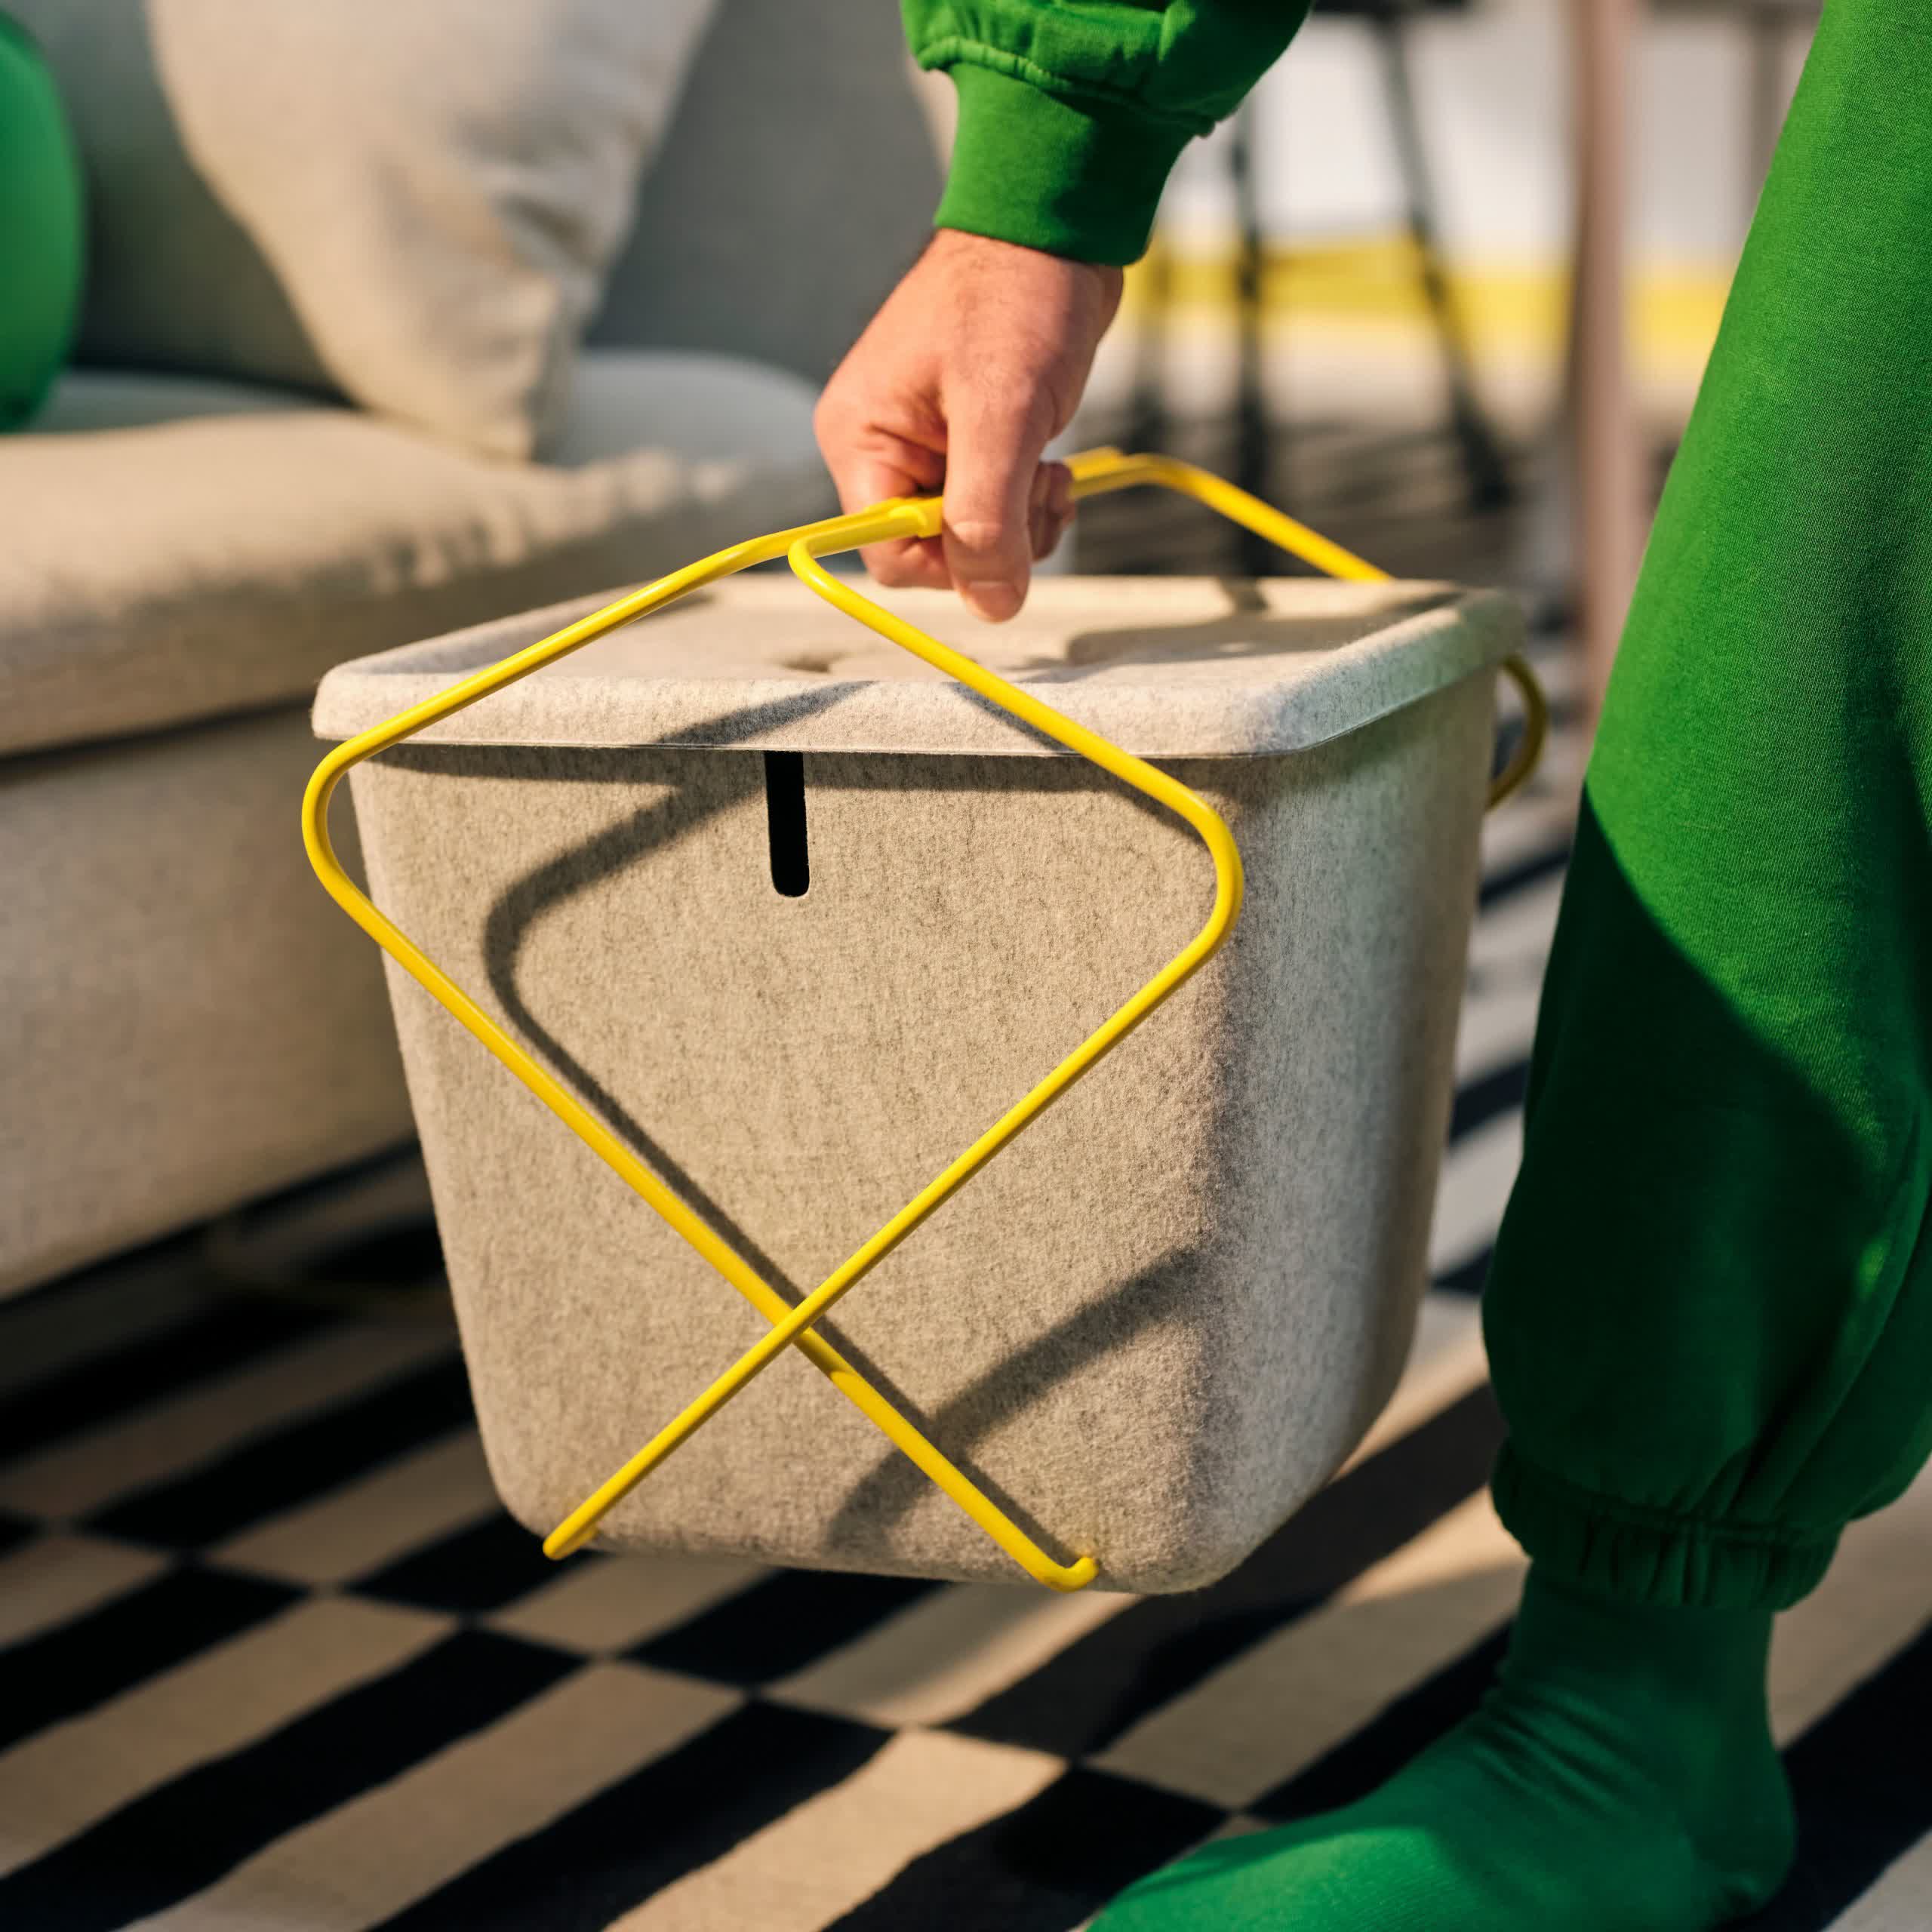 Ikea annonce Brännboll nouvelle ligne meubles alliant style fonctionnalité